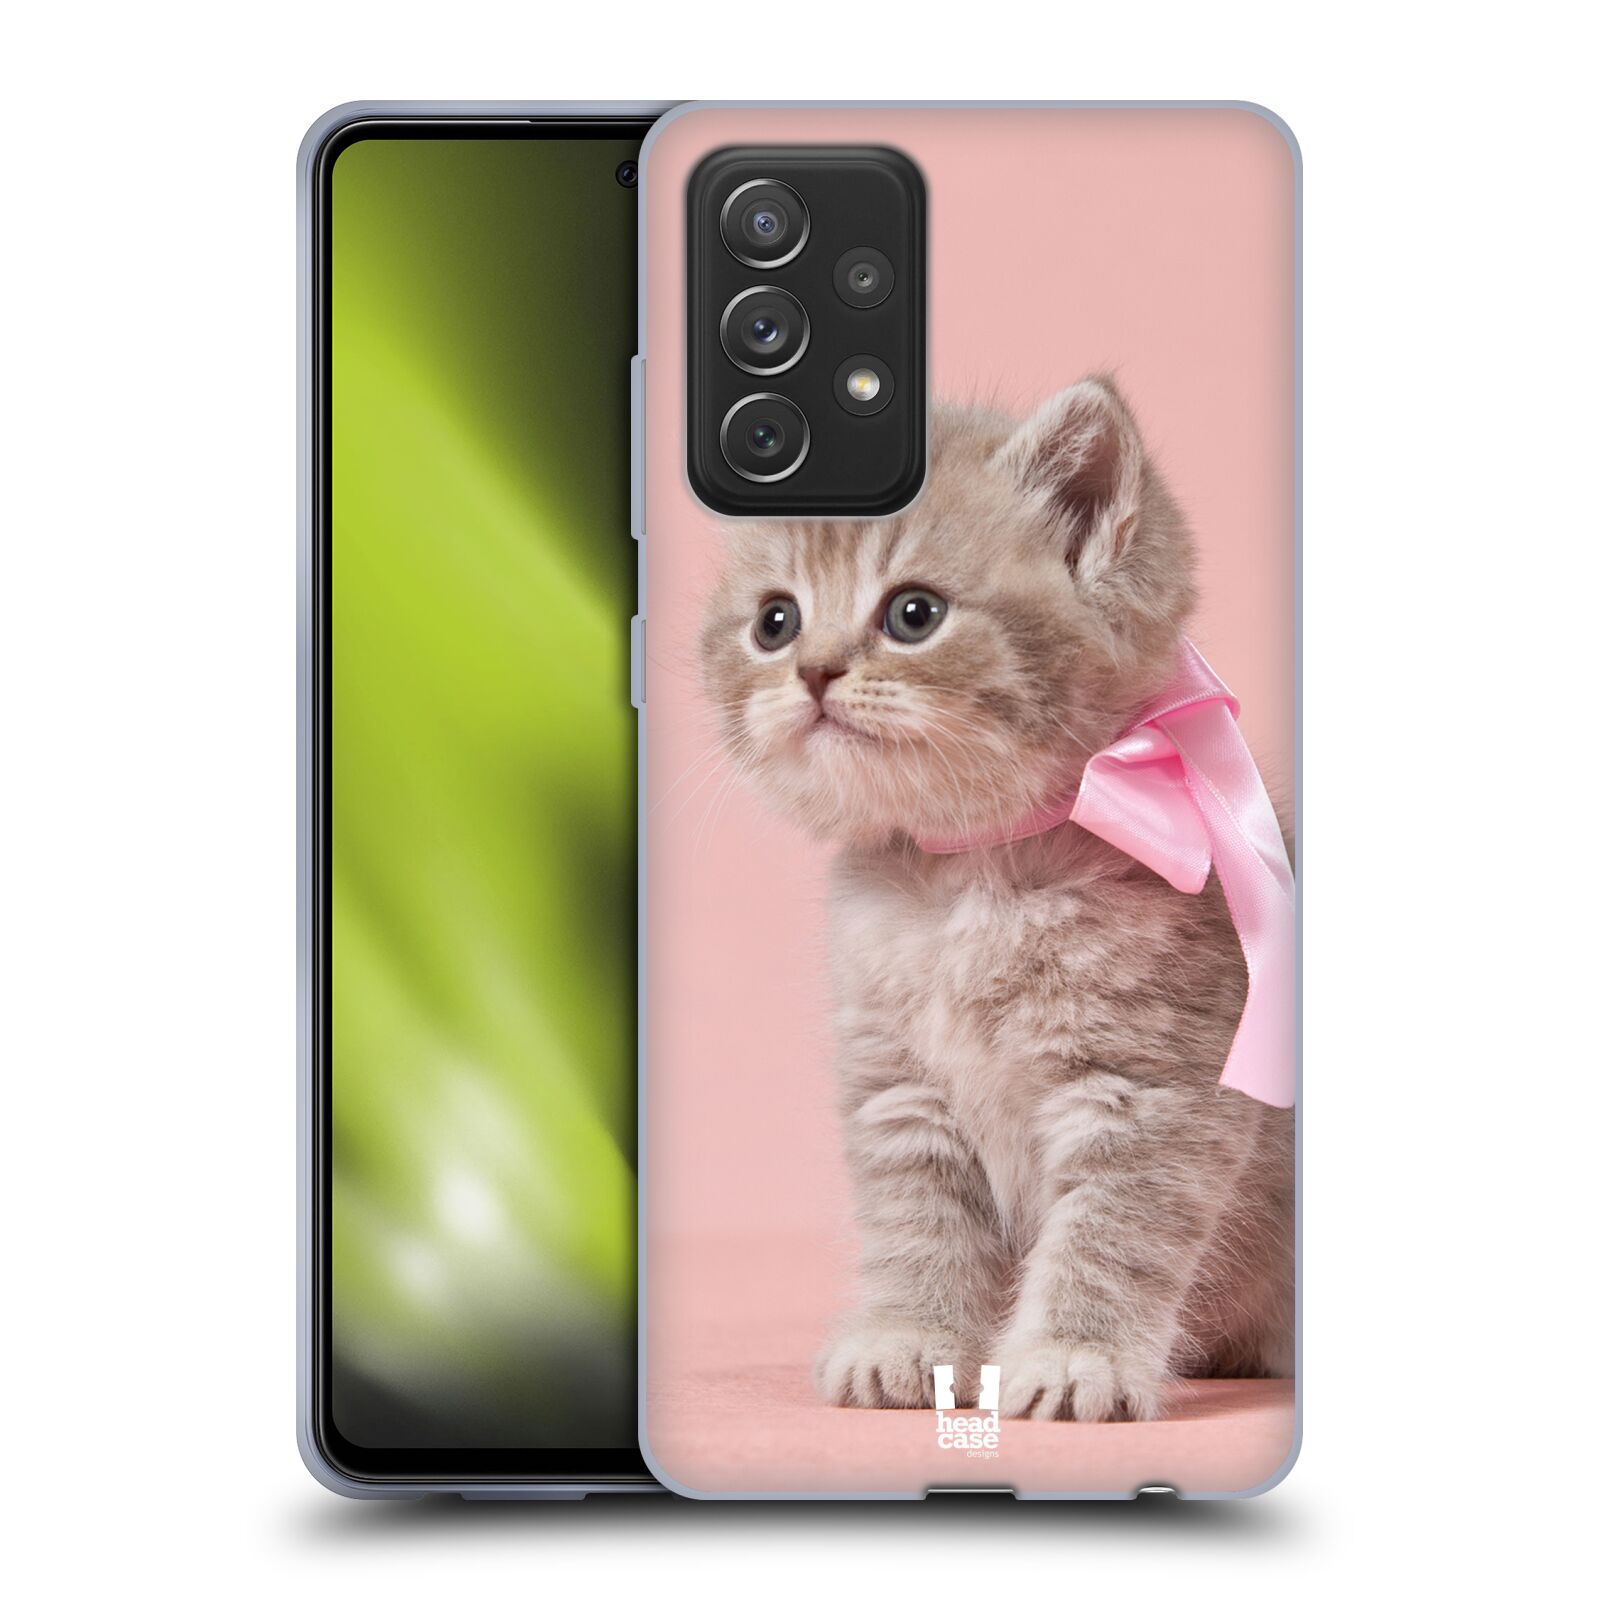 Plastový obal HEAD CASE na mobil Samsung Galaxy A72 / A72 5G vzor Kočičky koťata foto kotě s růžovou mašlí